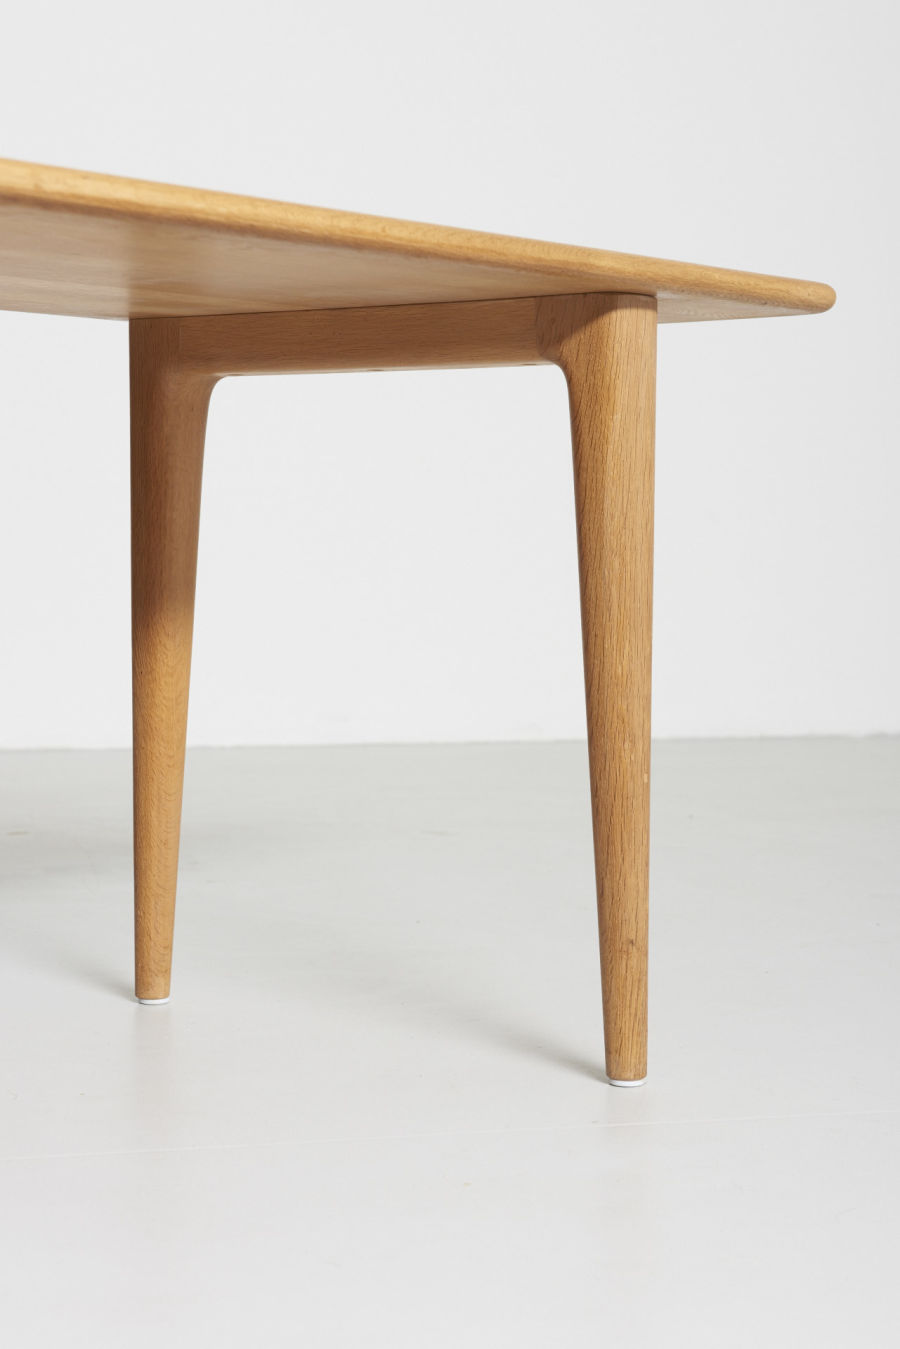 modest furniture vintage 1599 low table solid oak 09